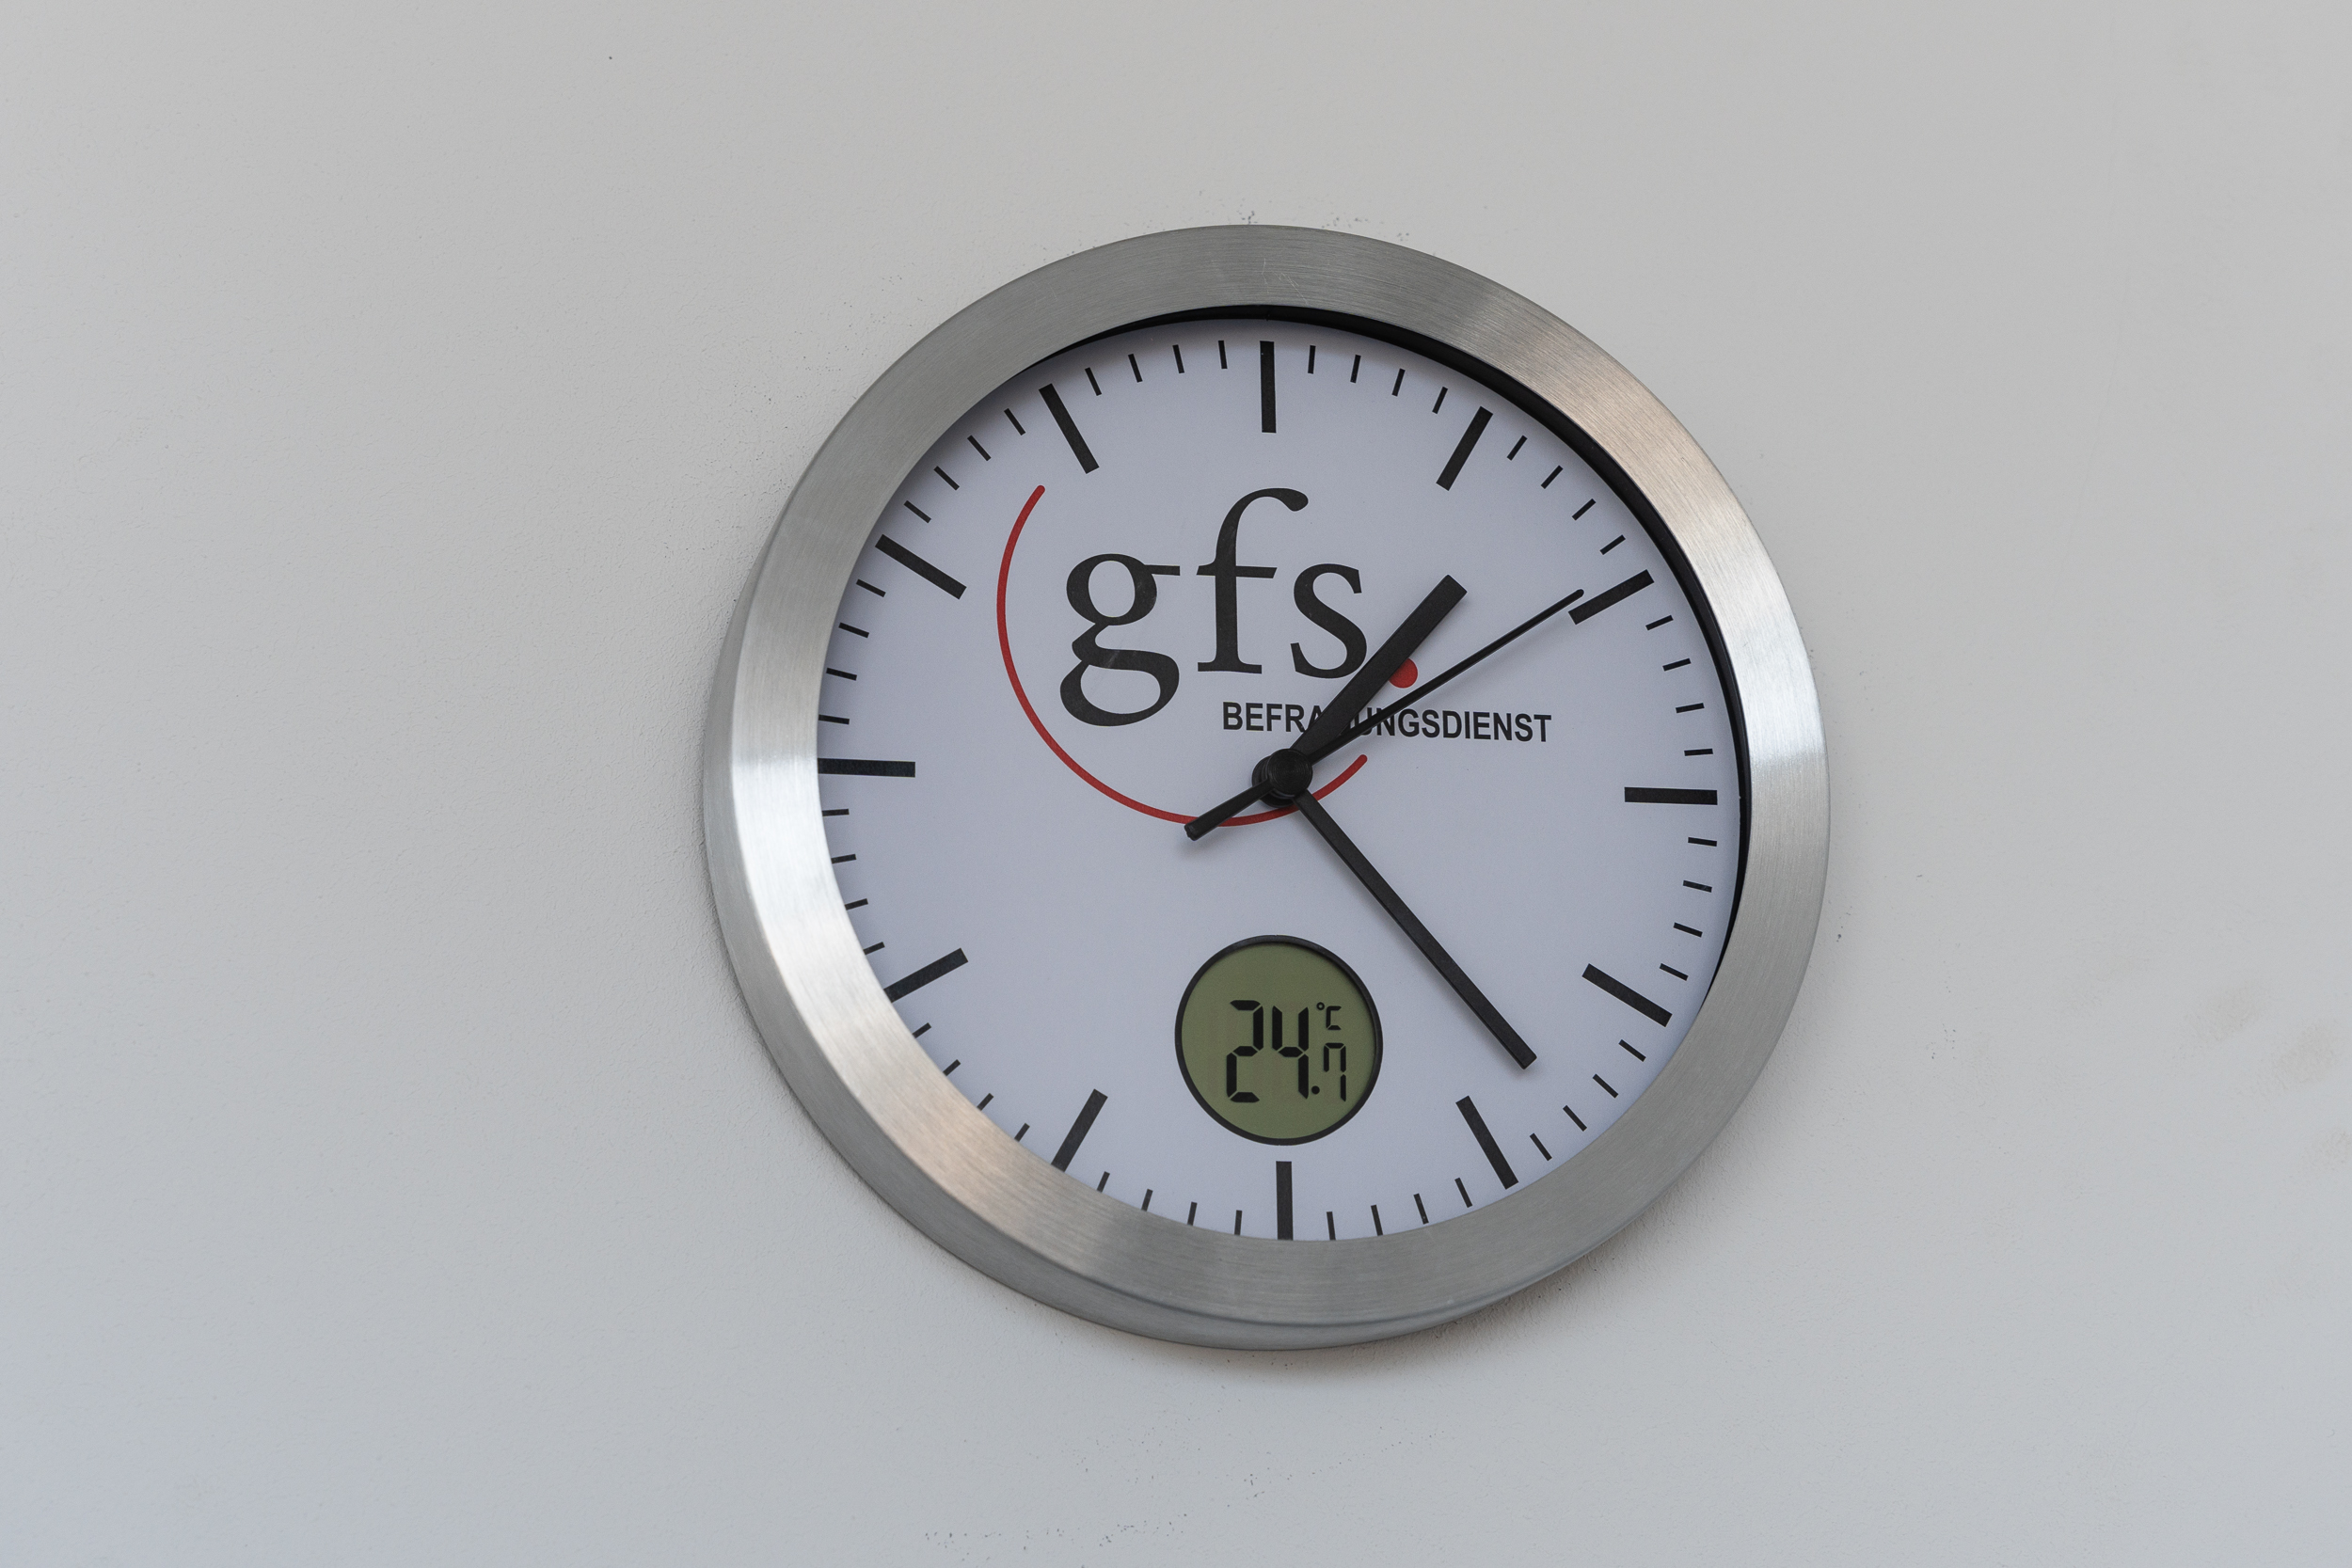 Une horloge avec le logo GFS